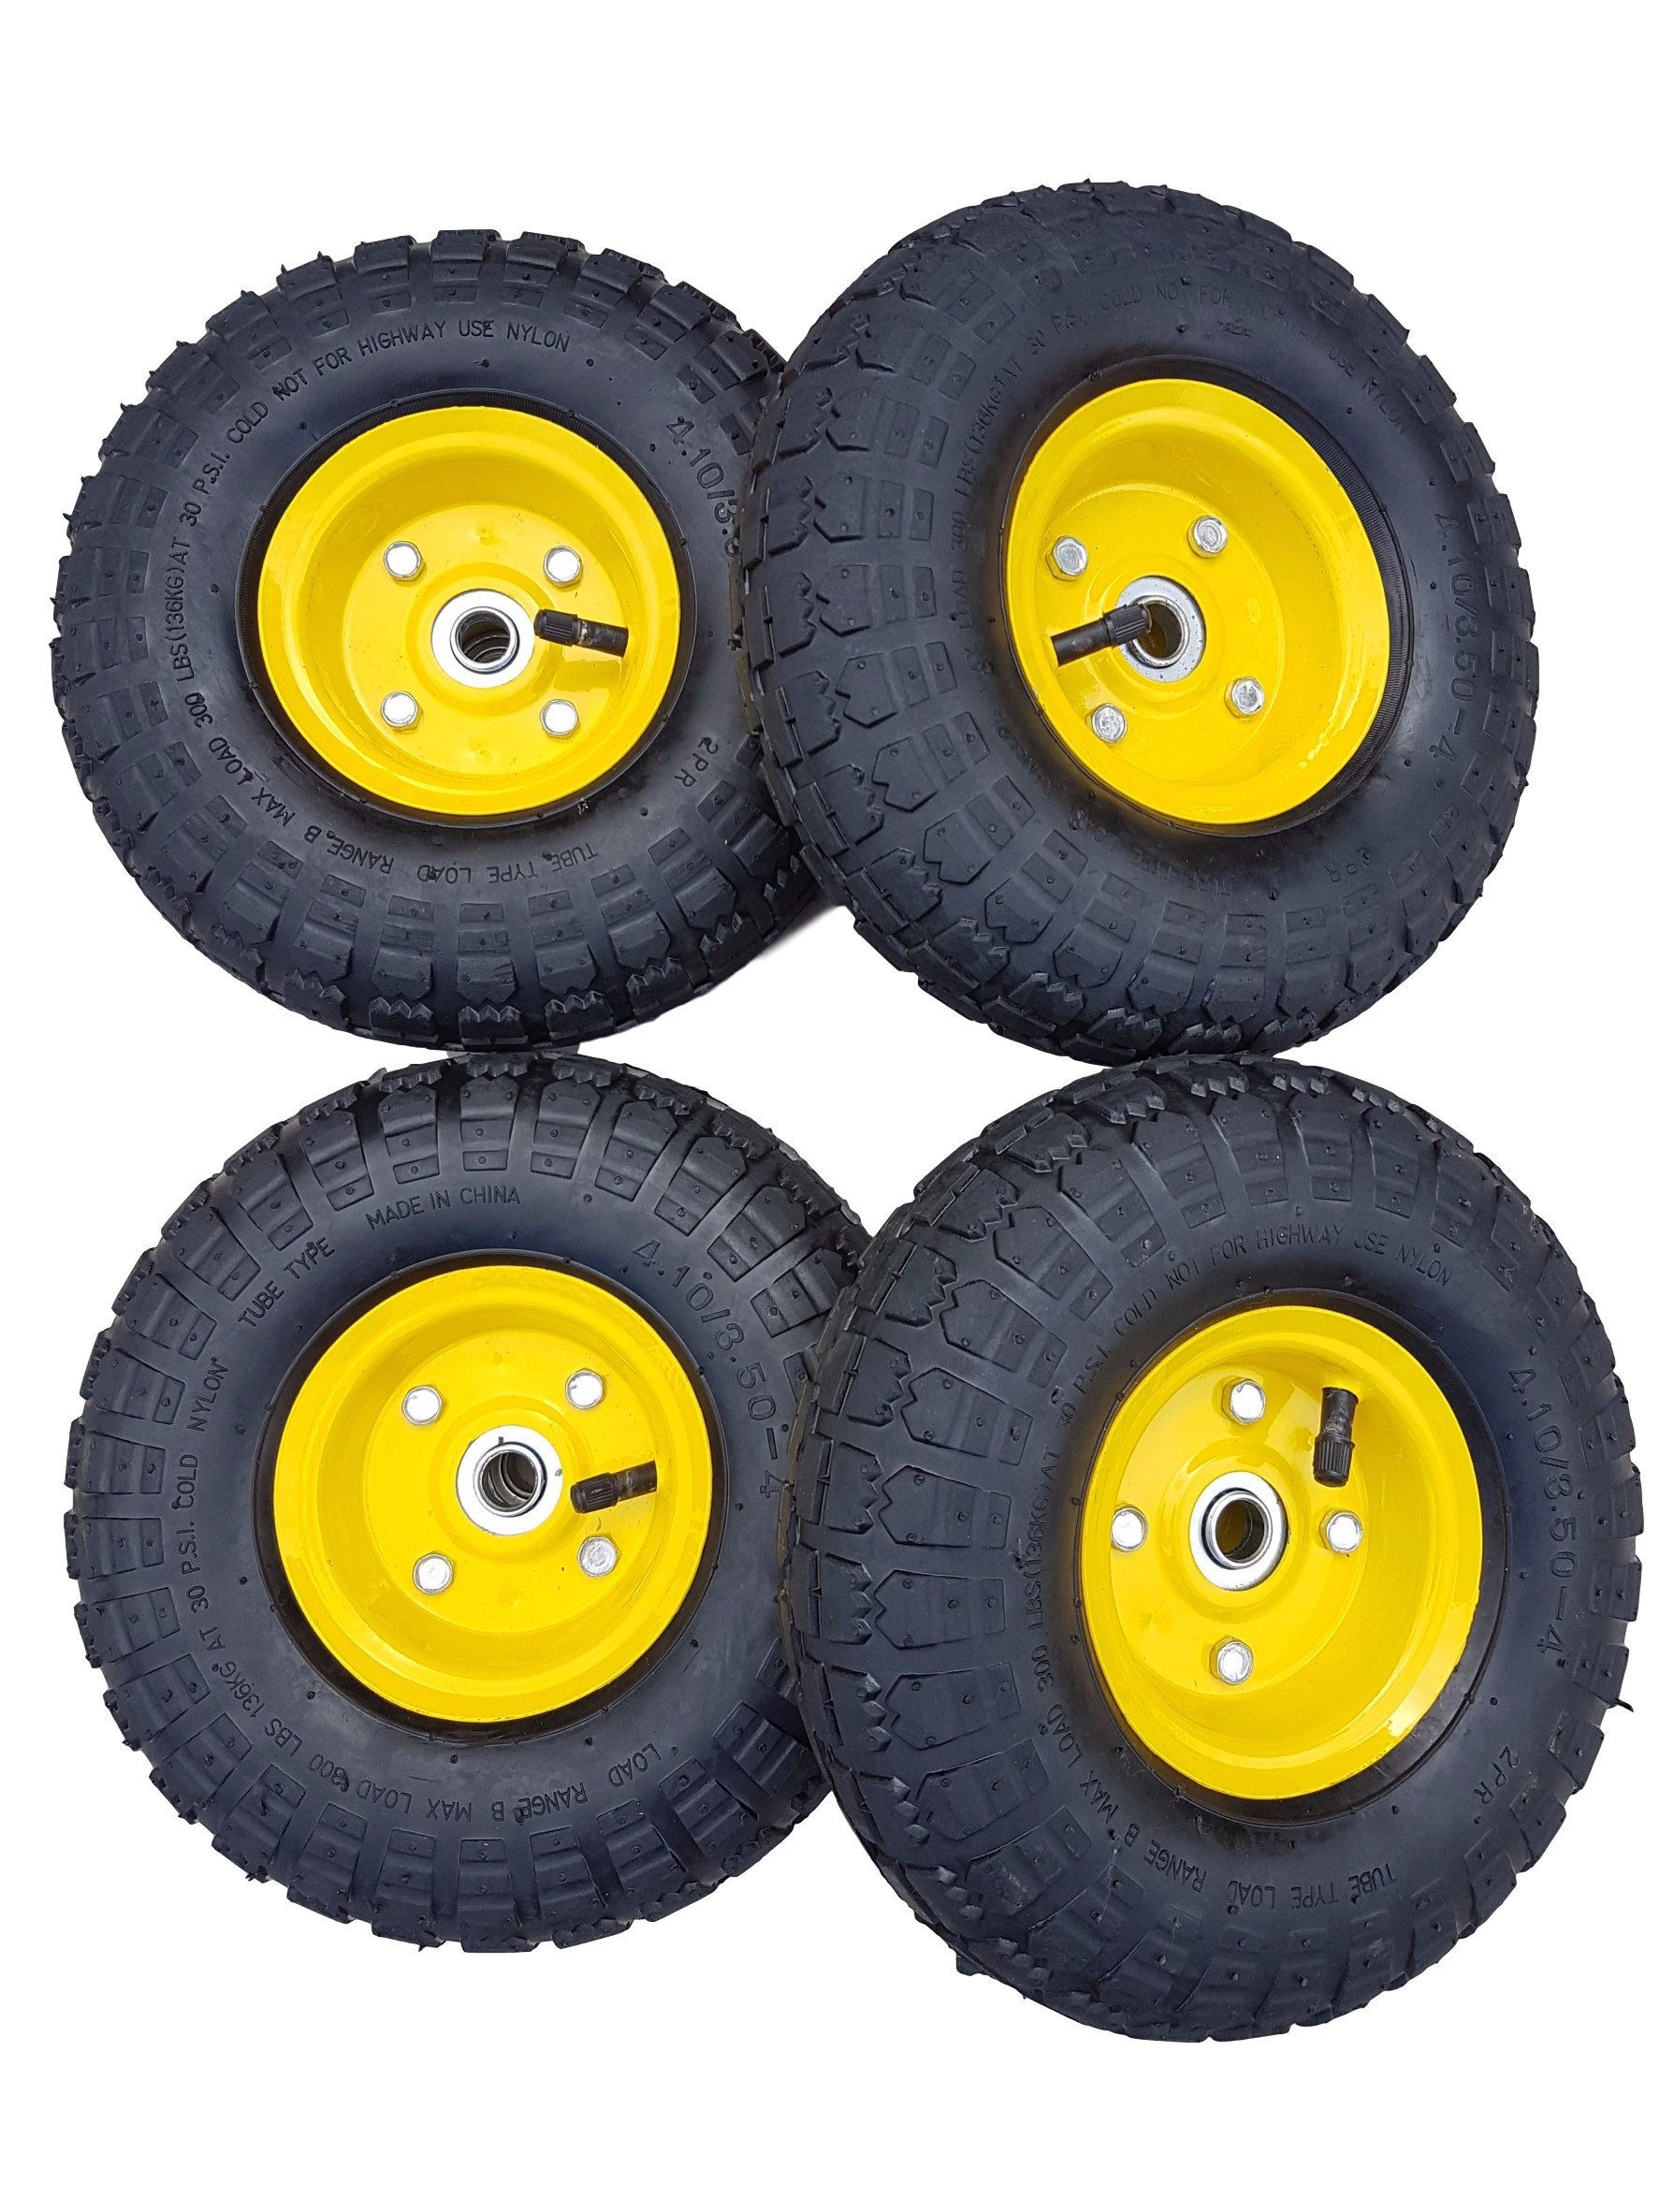 4 x FROSAL Luftrad Bollerwagen Ø 260 mm 4.10/3.50-4 | Ersatzrad Reifen Sackkarre | Achse 16 mm | Rad mit Kugellager | Stahlfelge gelb | Sackkarrenrad von Frosal